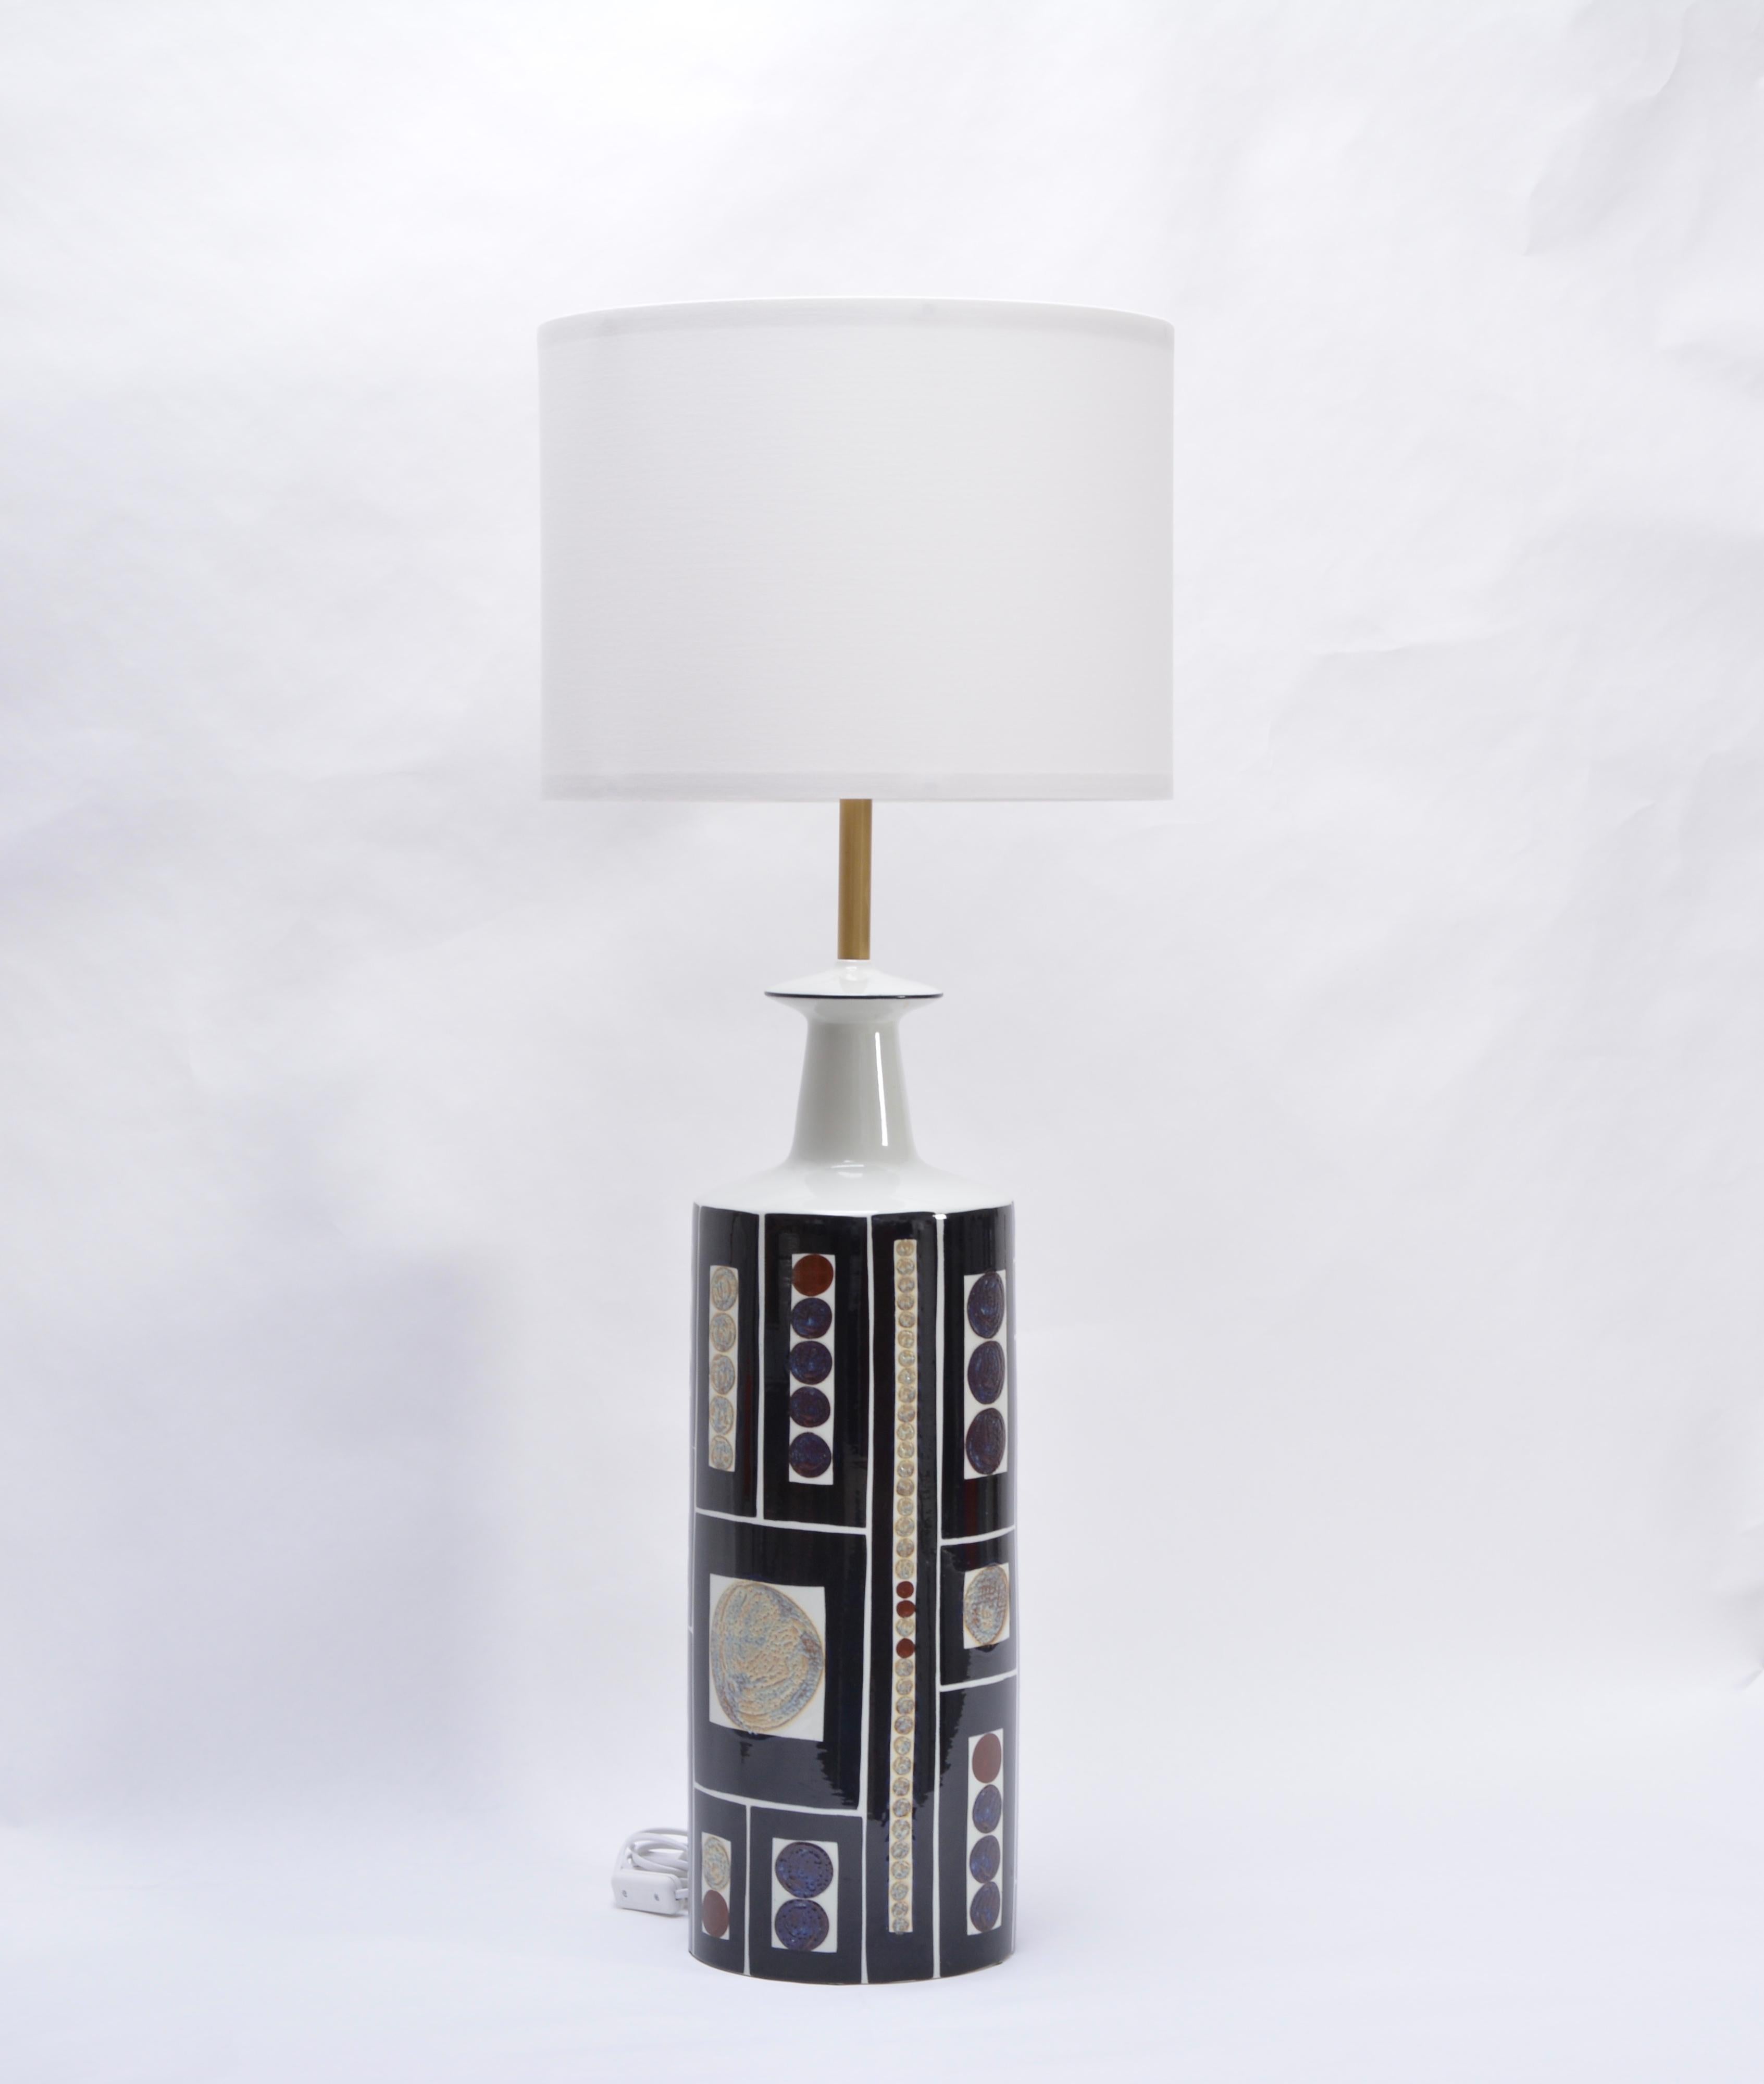 Très rare lampadaire avec un merveilleux design graphique et audacieux de l'artiste danoise Ingelise Kofoed. La lampe a été produite par Aluminia/Royal Copenhagen en collaboration avec le fabricant danois de lampes Fog & Mørup. Ingelise Kofoed a